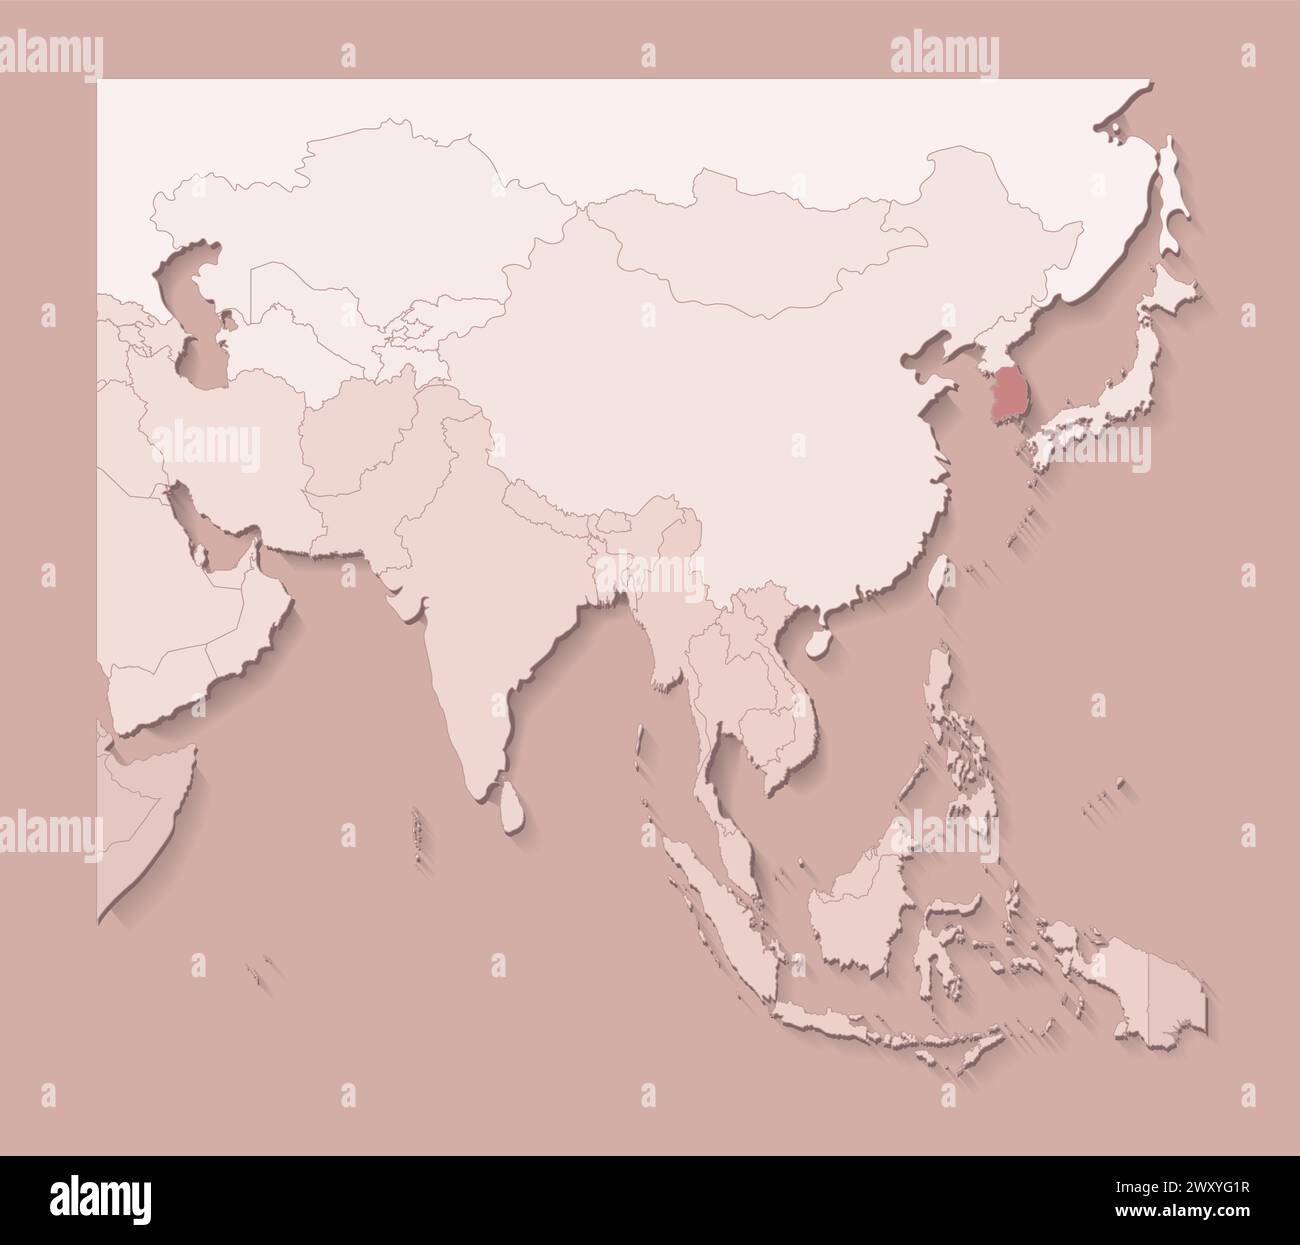 Vektor-Illustration mit asiatischen Gebieten mit Grenzen von staaten und markiertem Land Südkorea. Politische Karte in braunen Farben mit Regionen. Beige Backgrou Stock Vektor